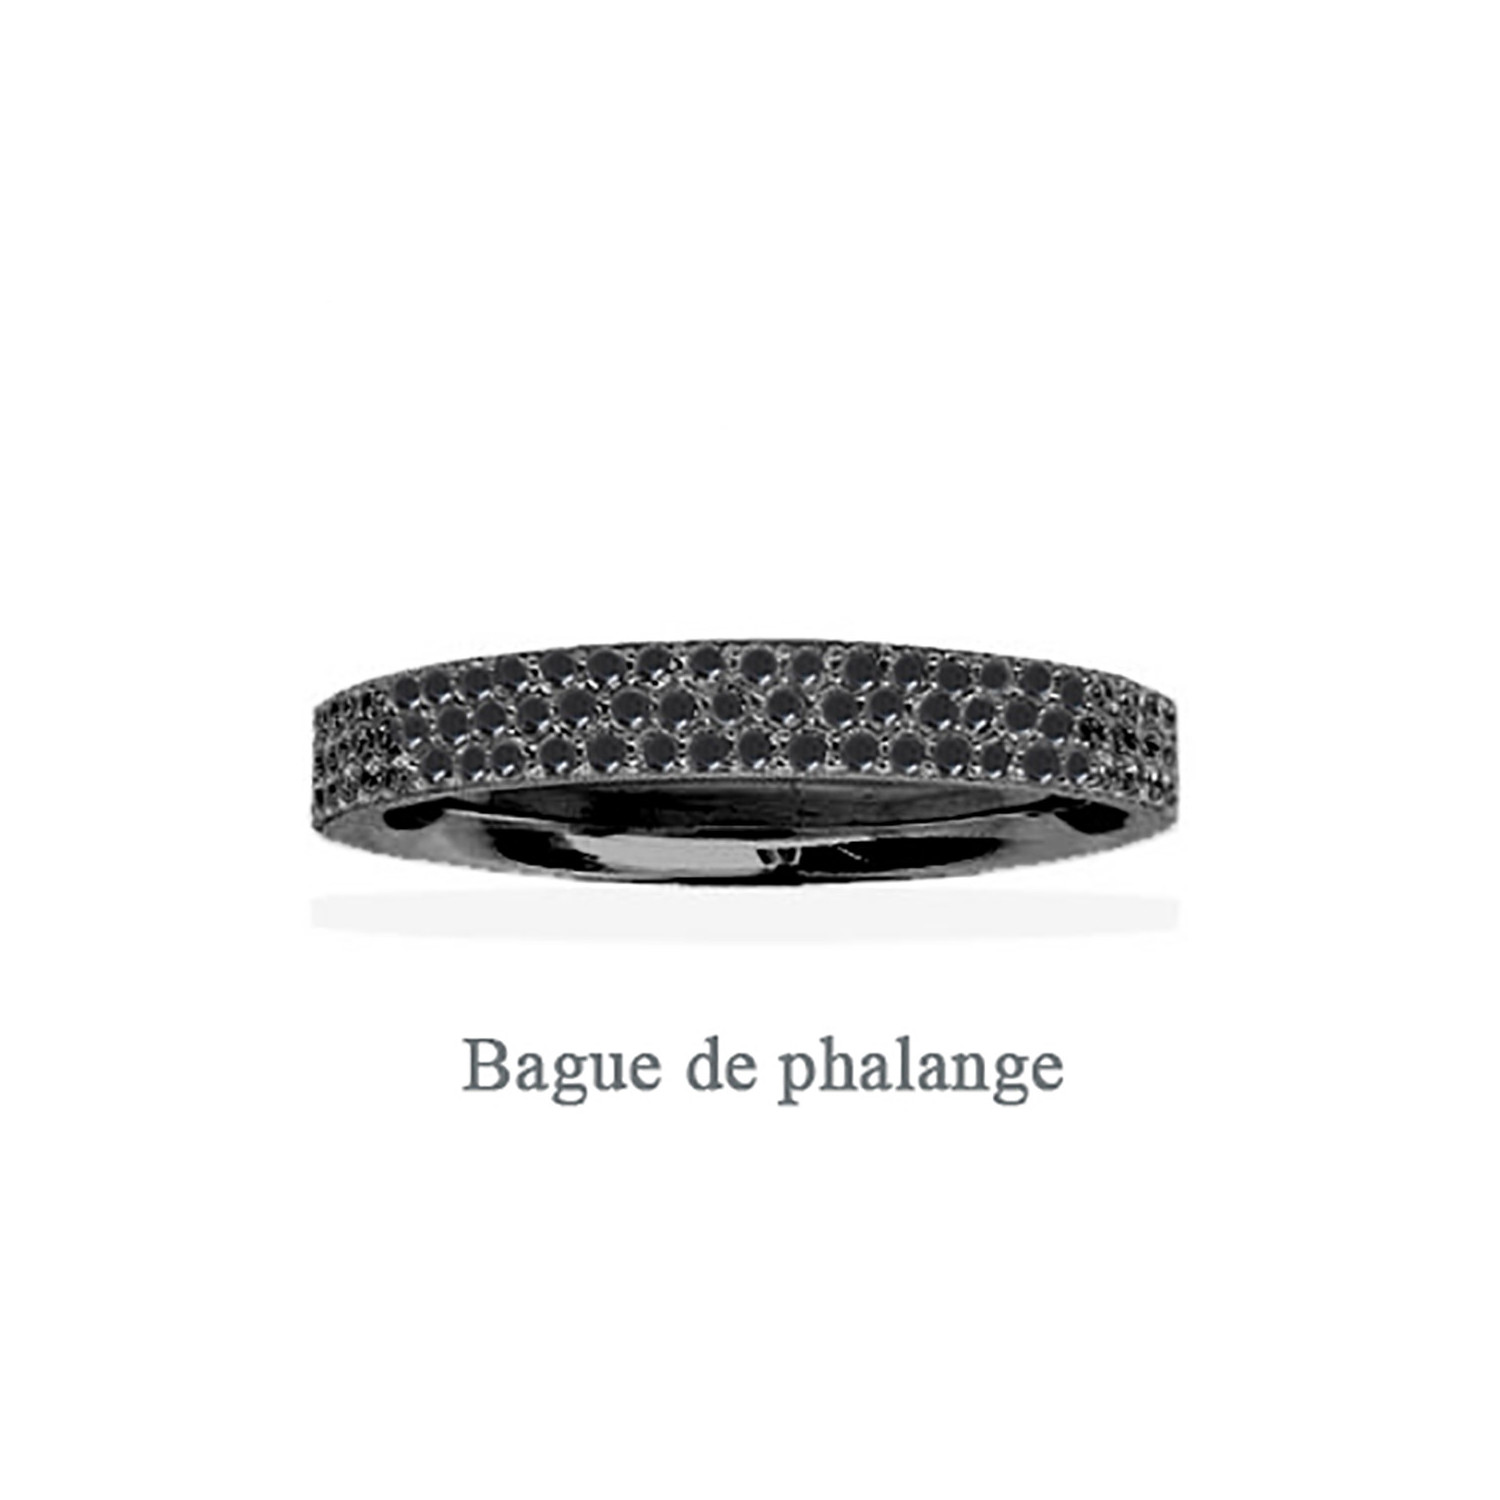 Bague de phalange APM Monaco pierres noires
Collection croisette rose-44